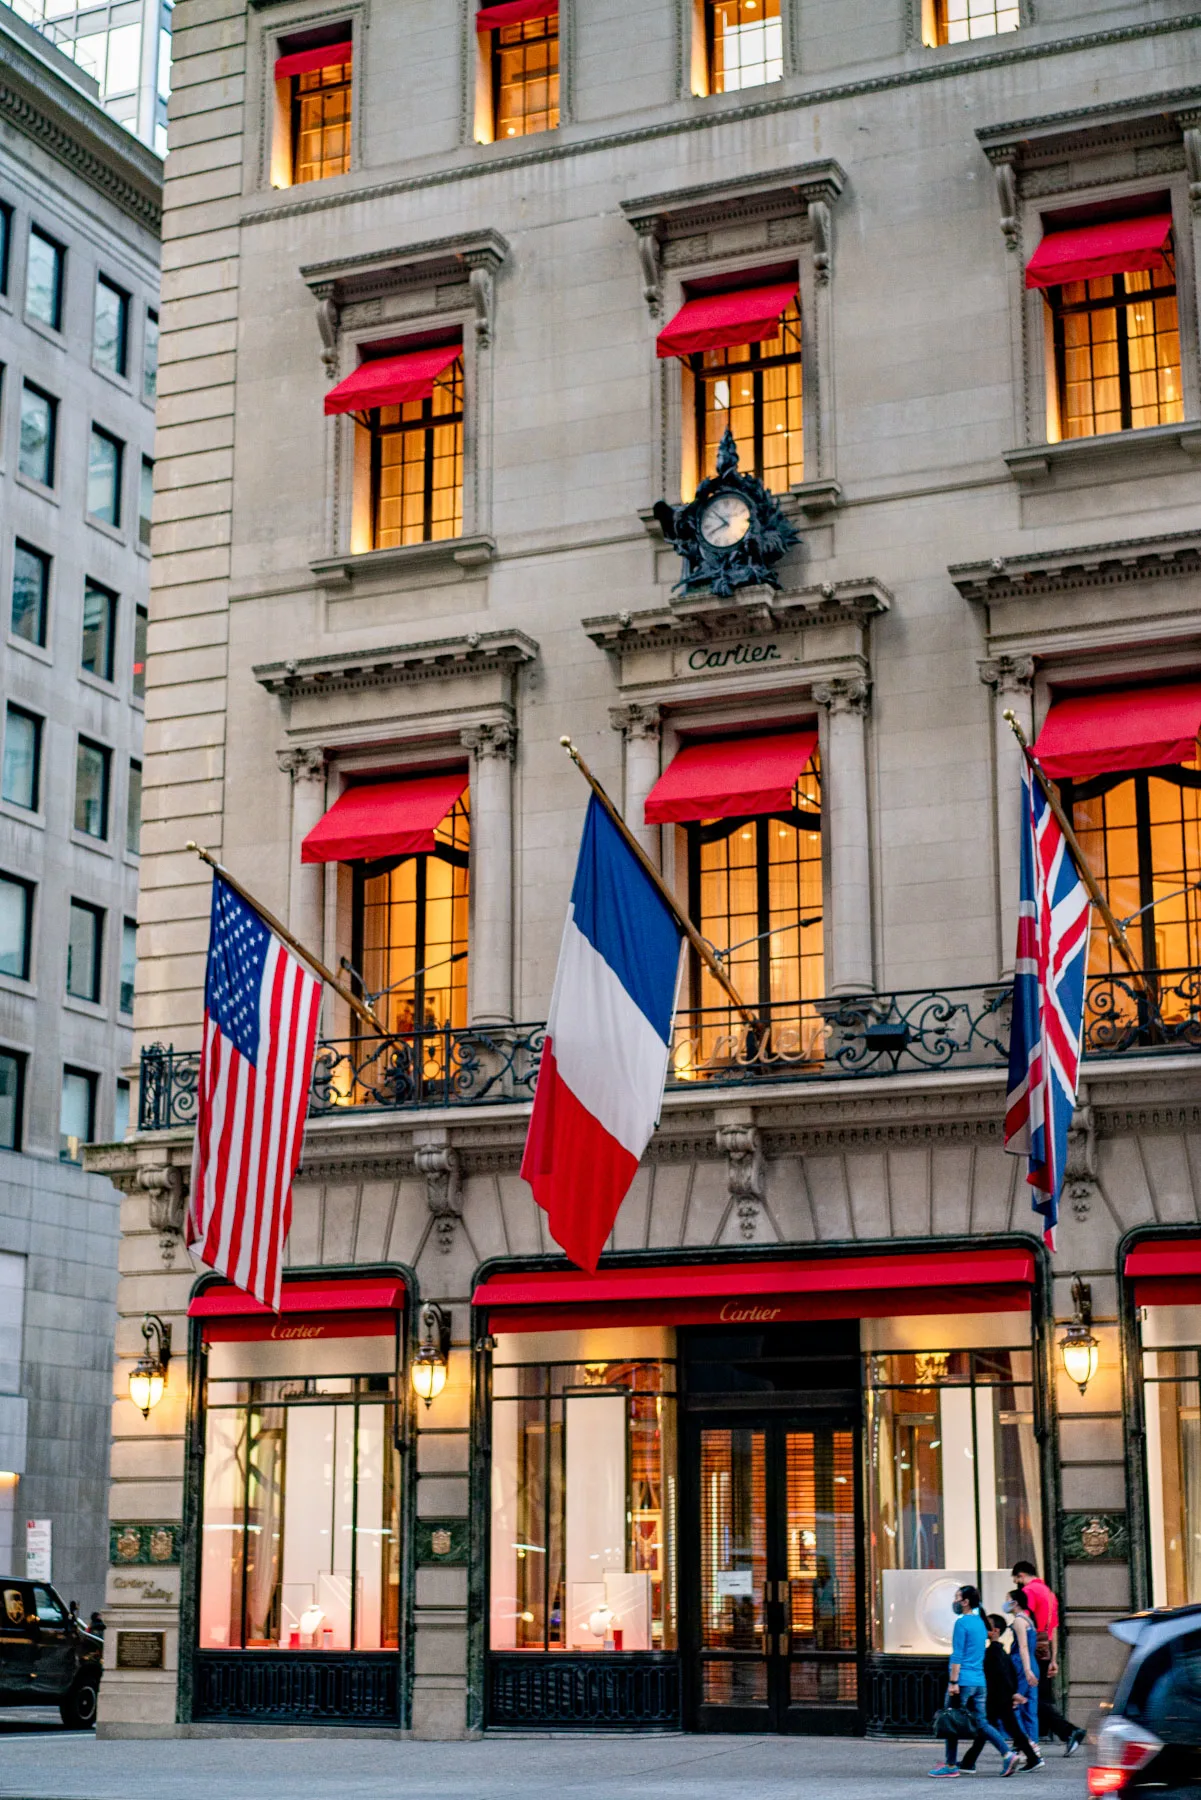 Best stores Manhattan
Cartier Fifth Avenue